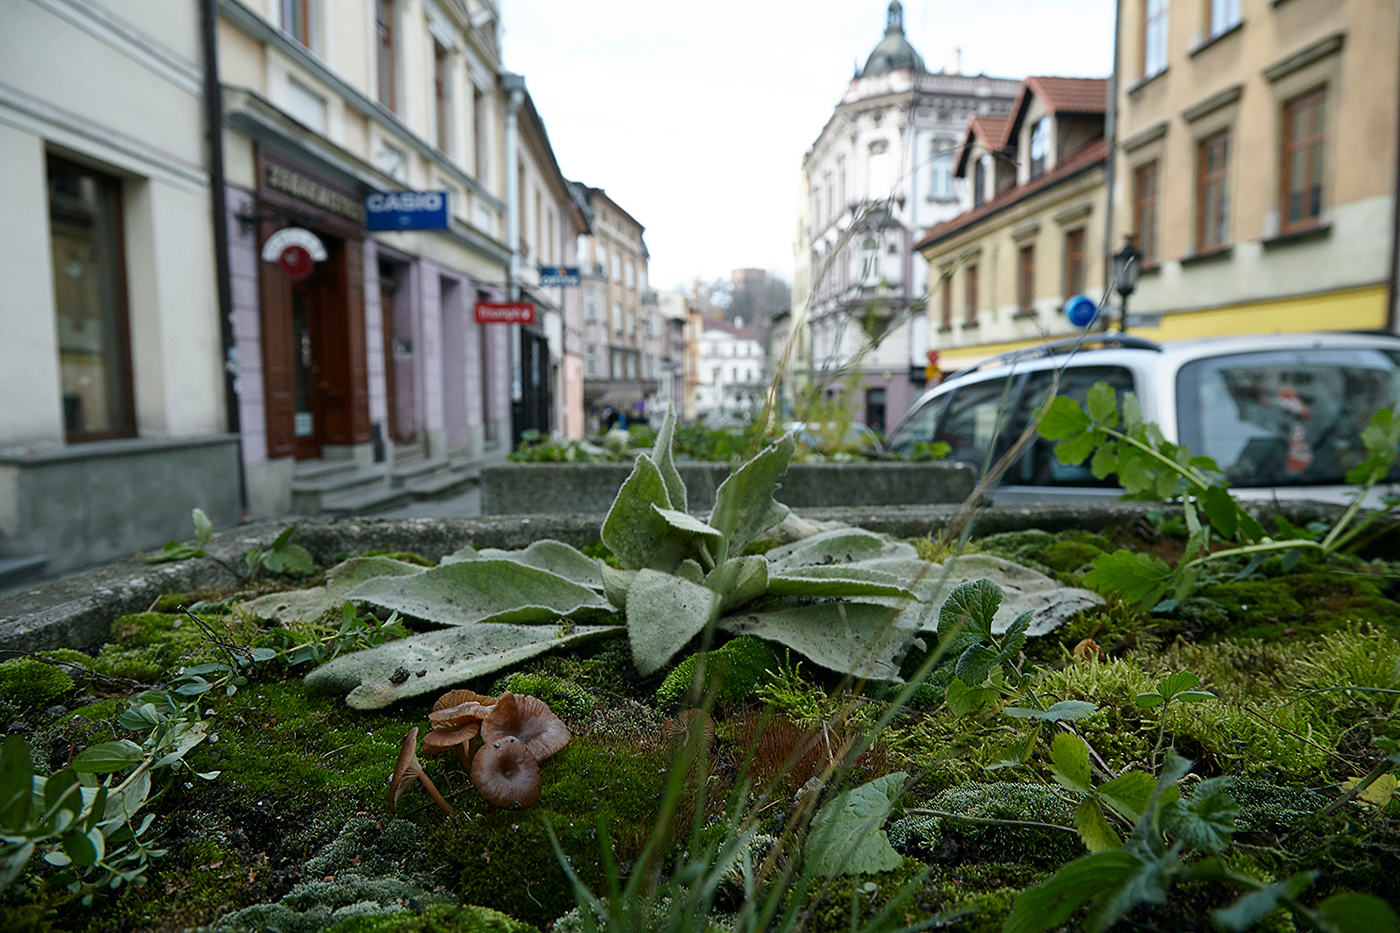 Rośliny rosną w donicy przy ulicy wśród miejskiej zabudowy.